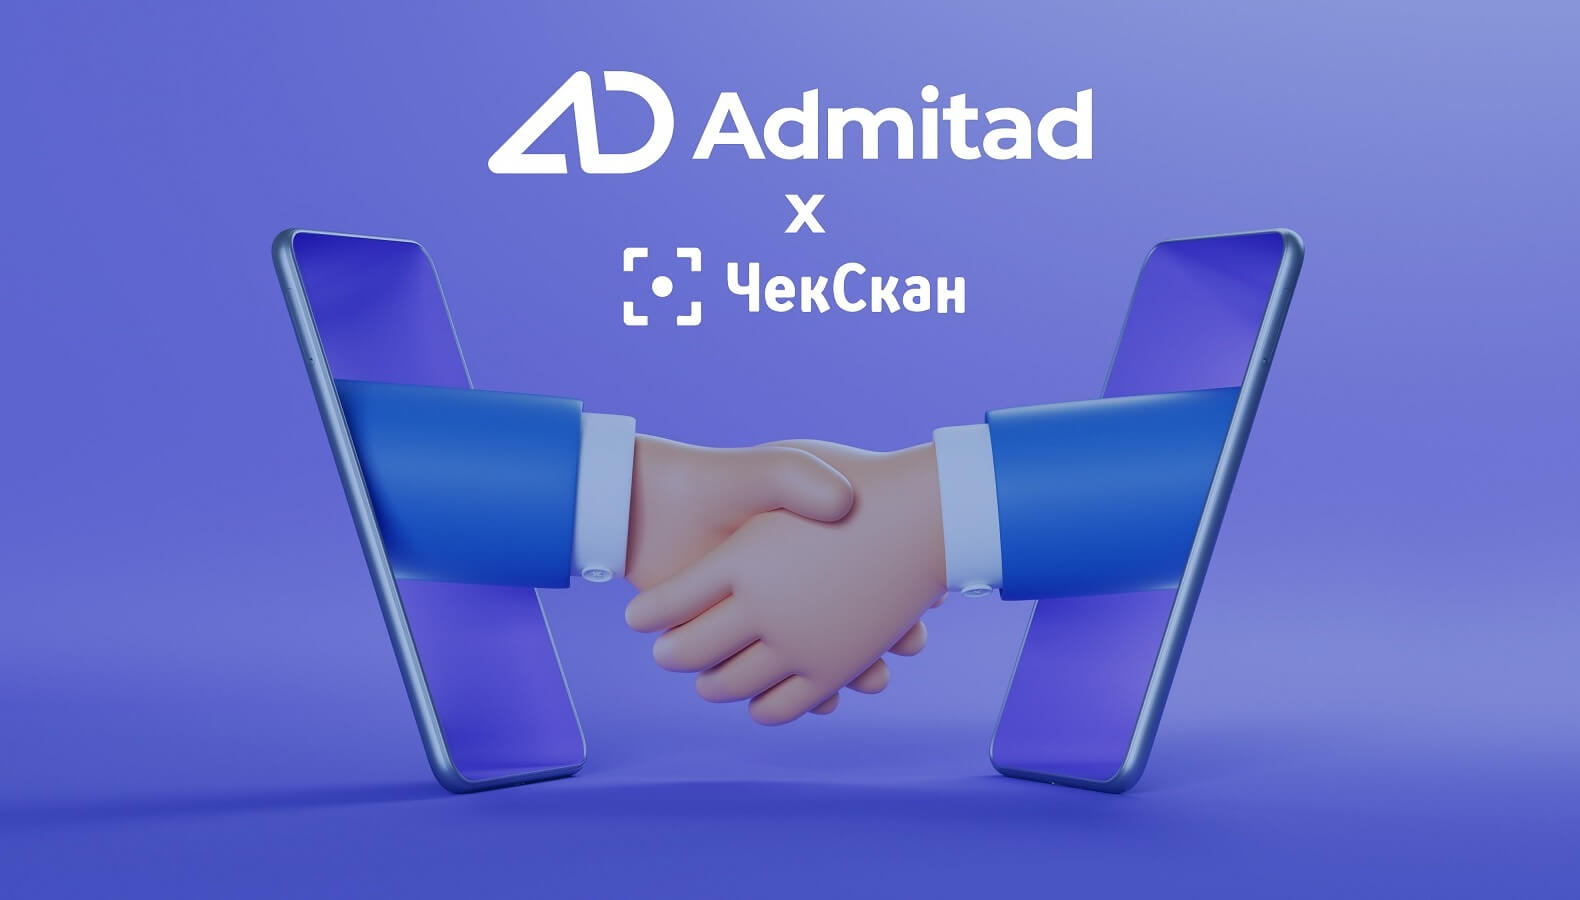 Компания Admitad купила сервис сканирования чеков ЧекСкан